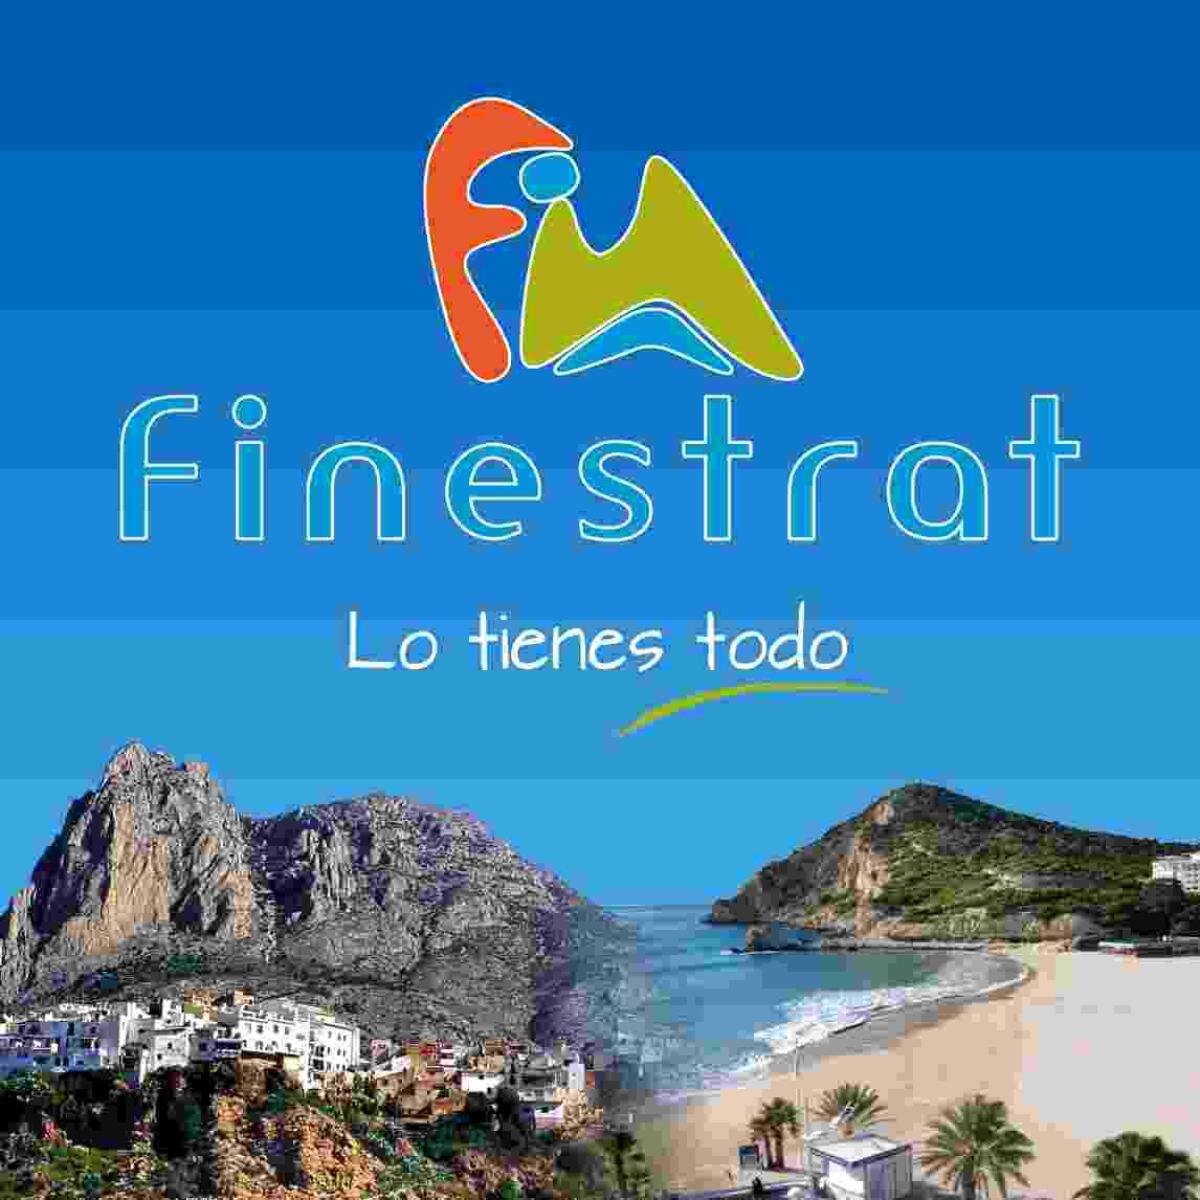 Finestrat estará presente en FITUR con su propuesta turística “Lo tienes todo” 